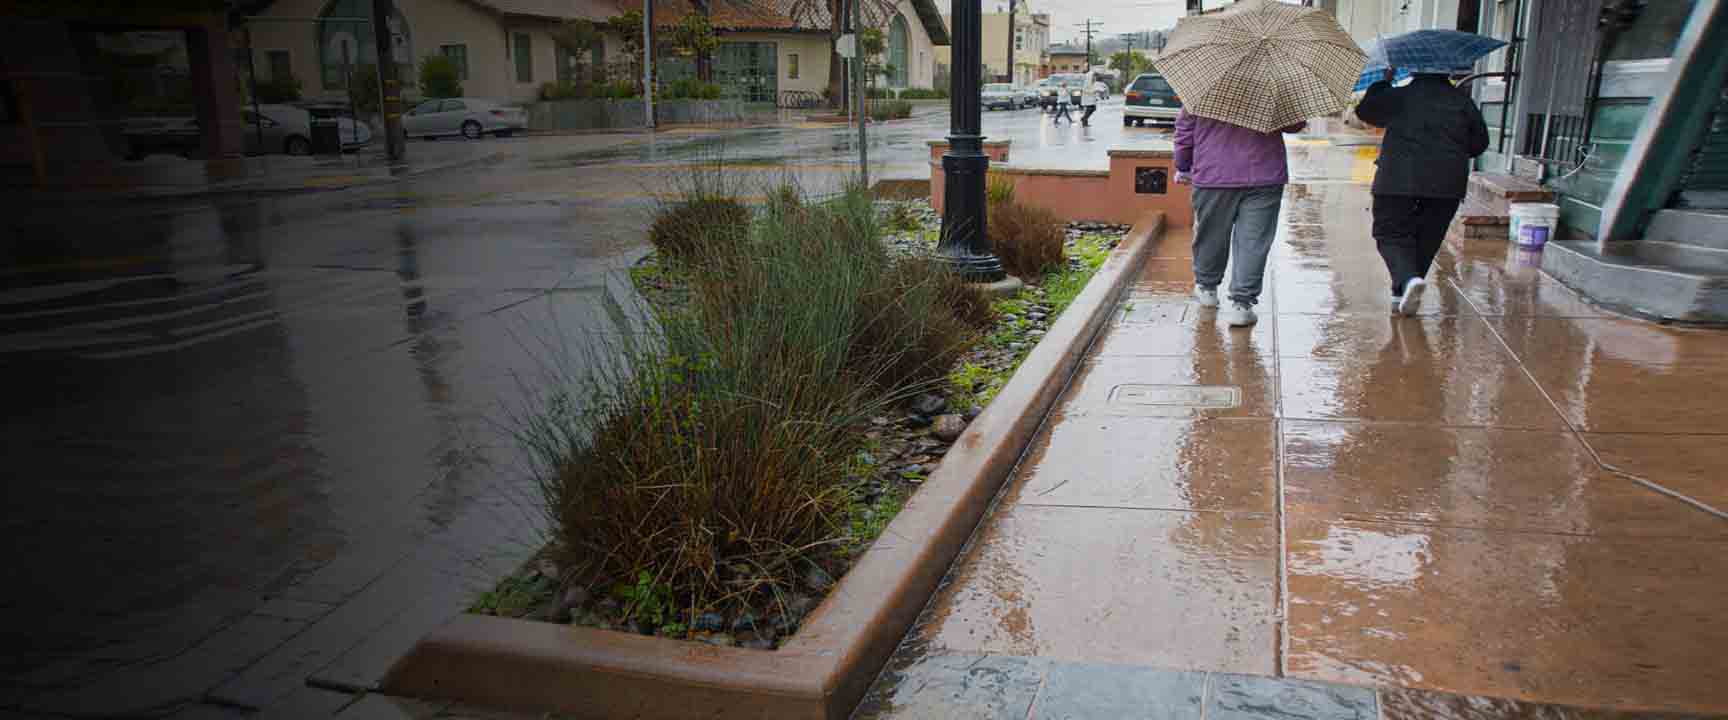 أشخاص يسيرون تحت المطر بجوار حديقة مشي جانبية تعمل كبنية تحتية خضراء للمساعدة في إدارة جريان مياه الأمطار.